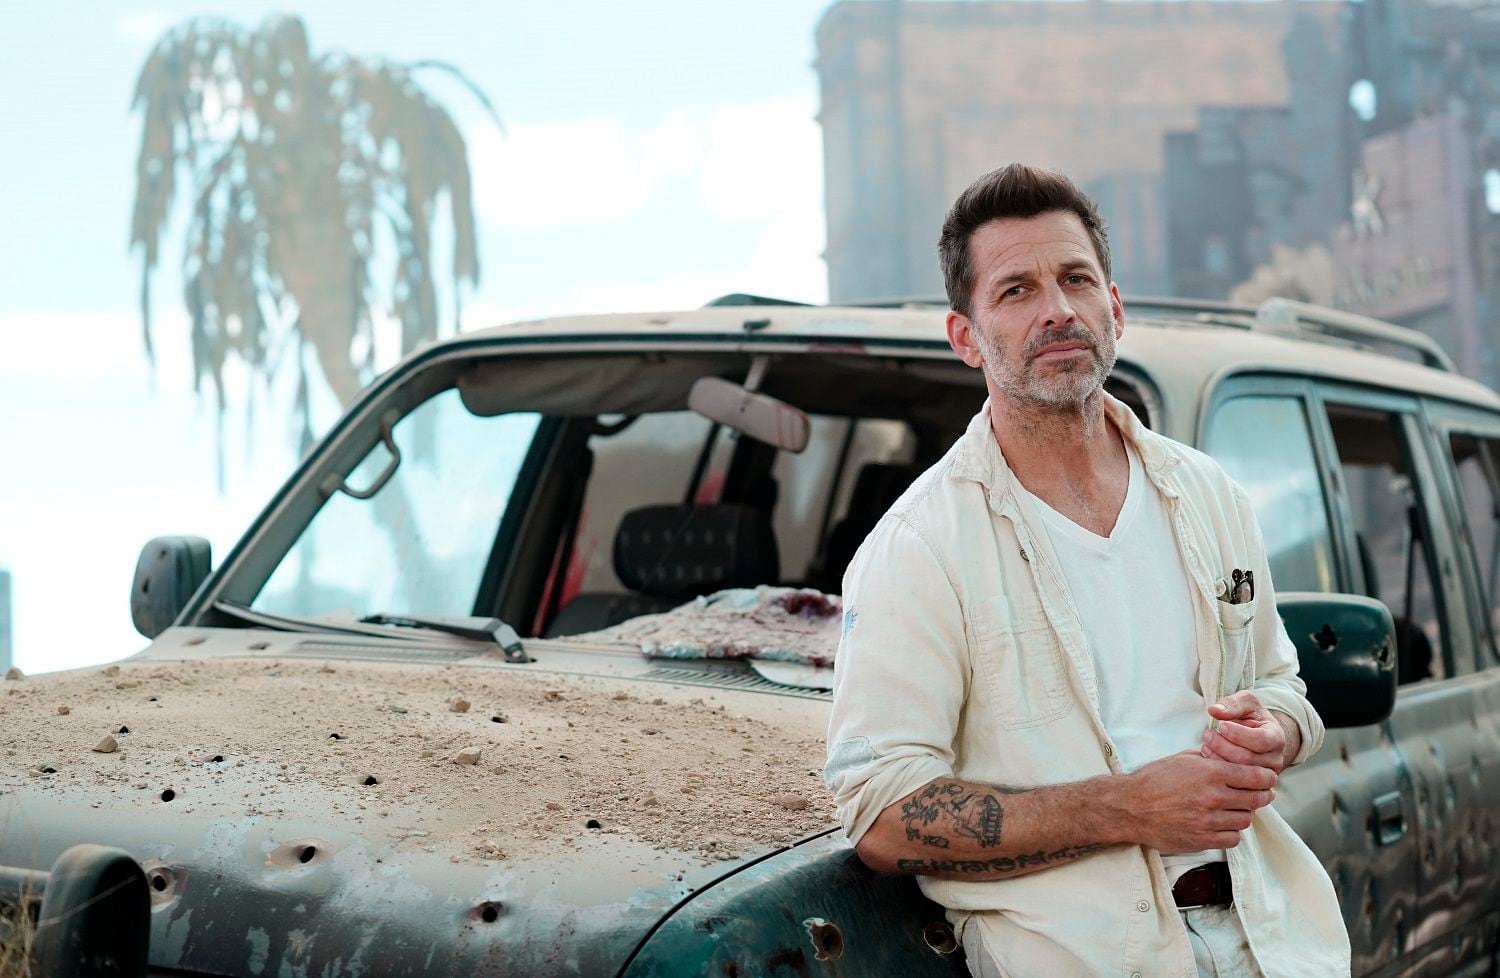 El director Zack Snyder posa para un retrato en un escenario virtual de una apocalíptica  Las Vegas para promover su película "Army of the Dead" el viernes 7 de mayo de 2021 en El Segundo, California. (Foto AP/Chris Pizzello)